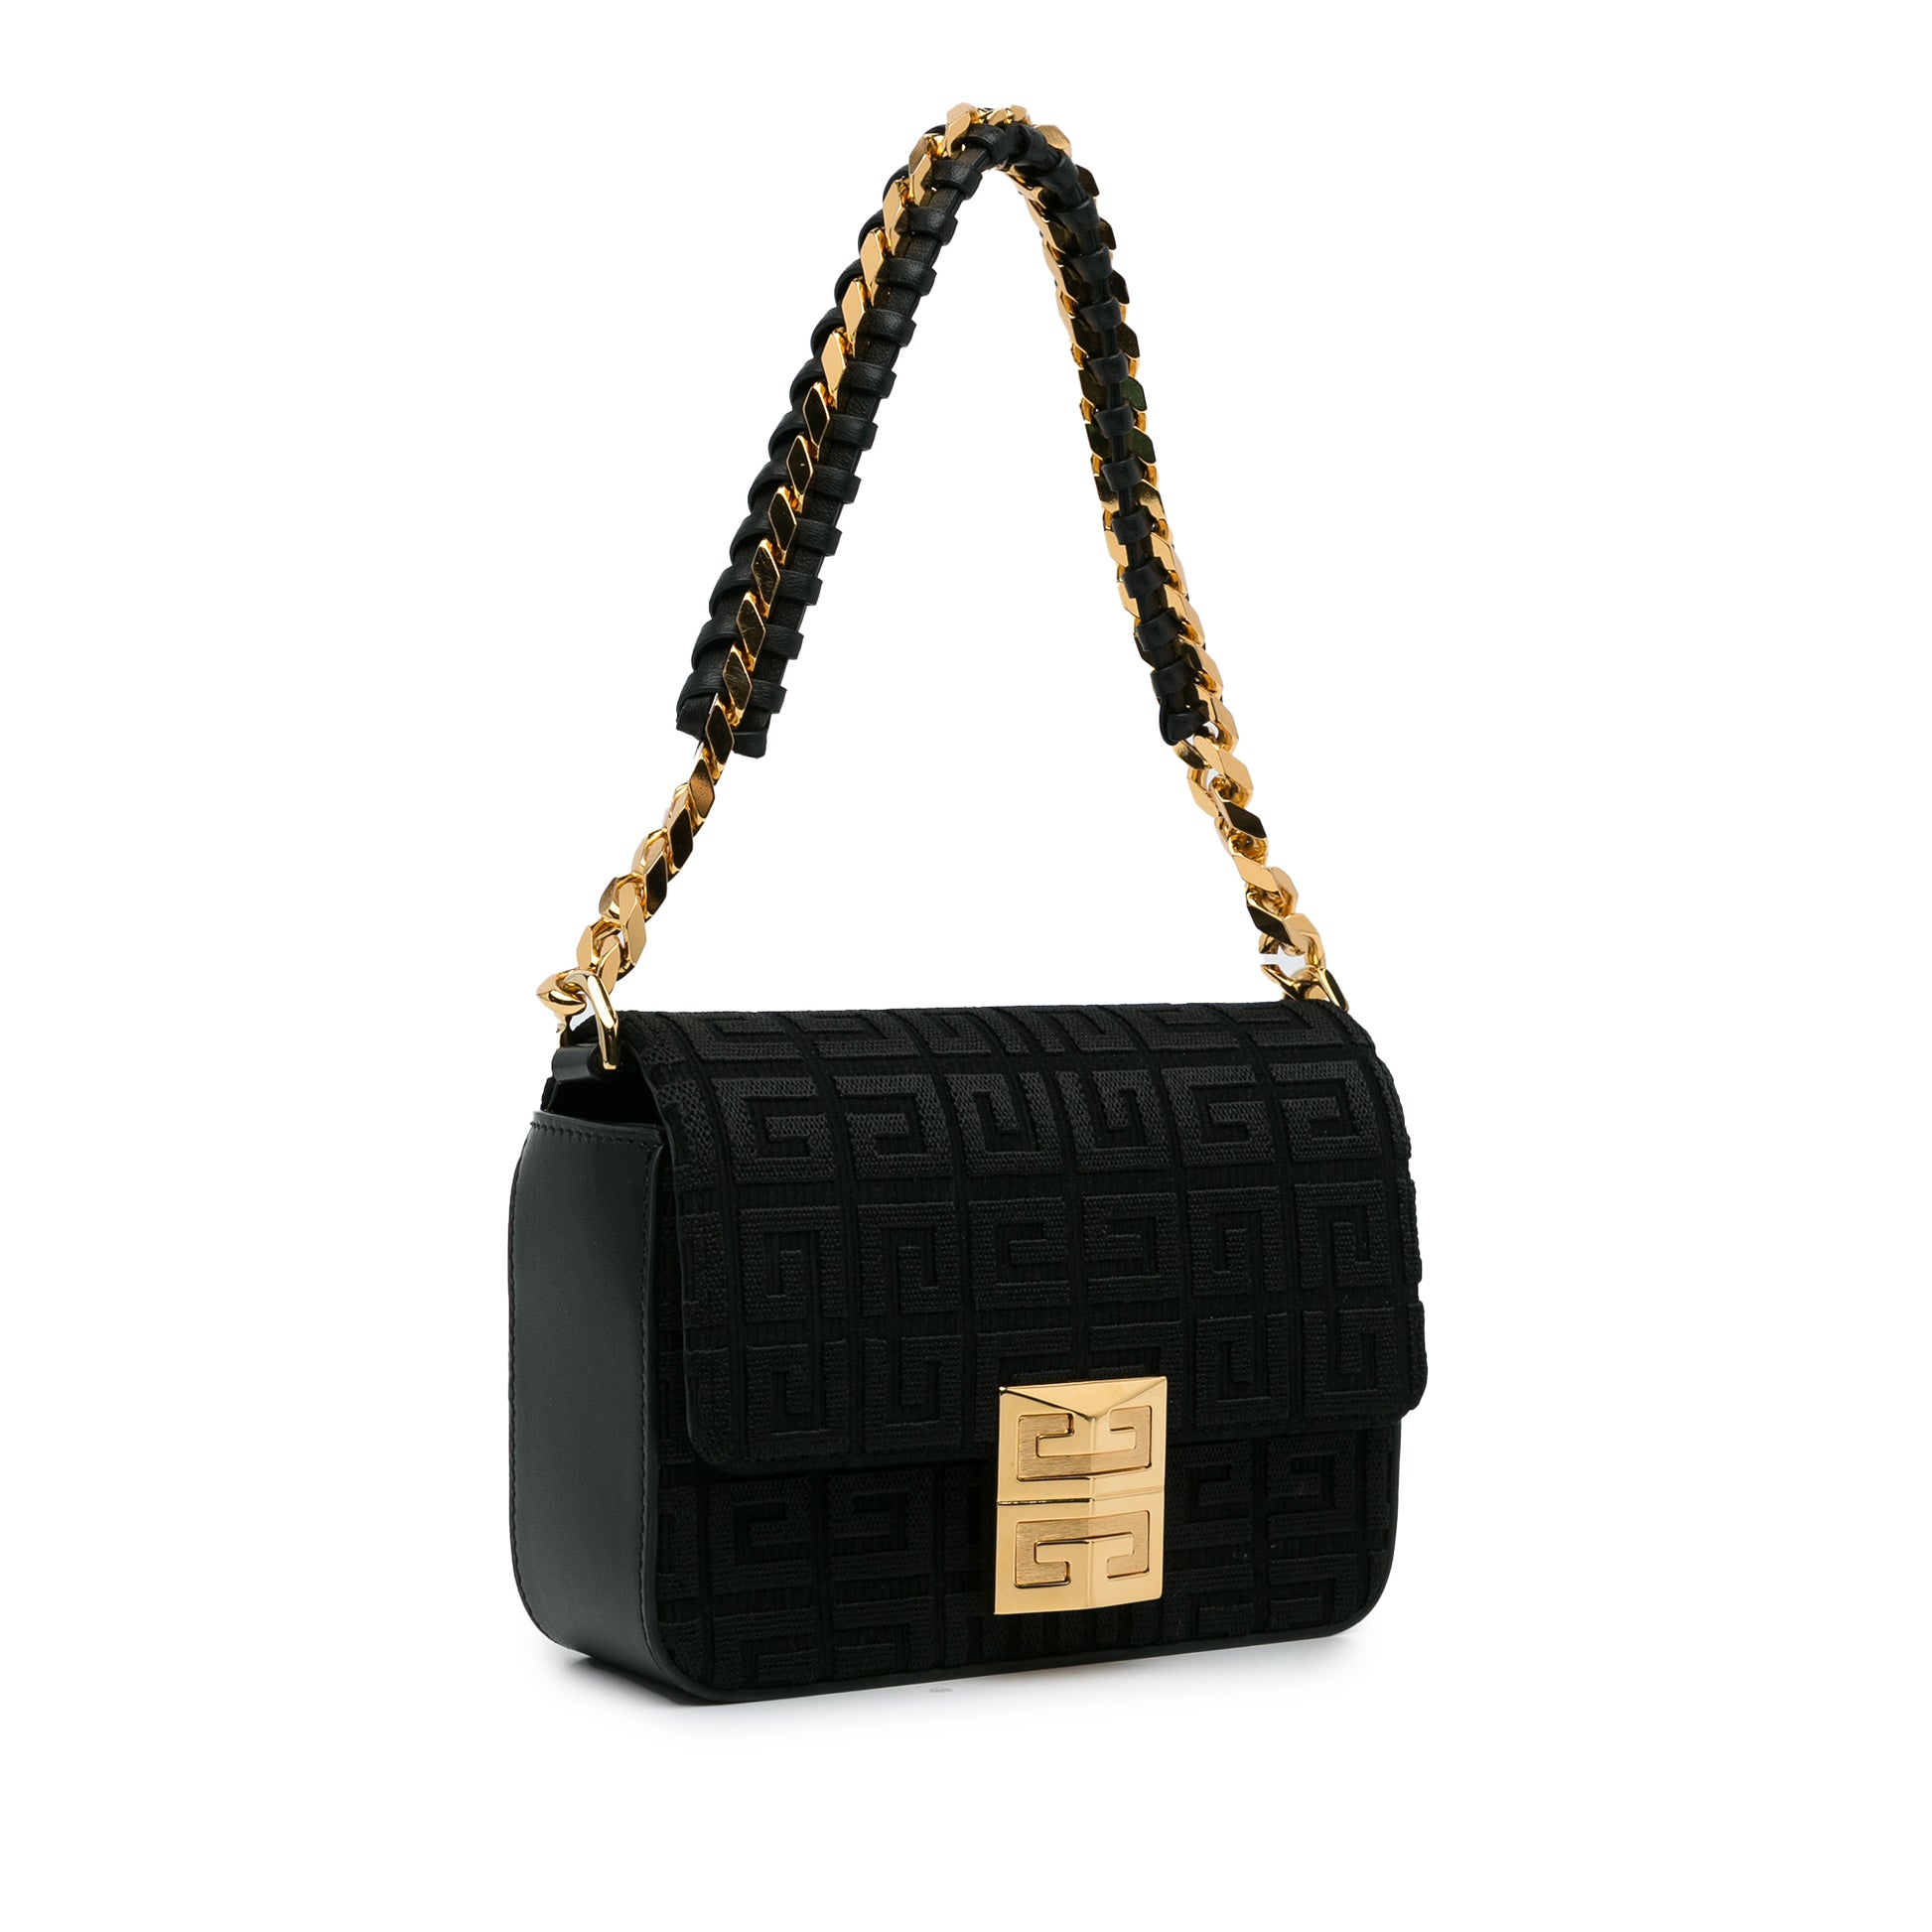 4G Embroidered Shoulder Bag Black - Gaby Paris